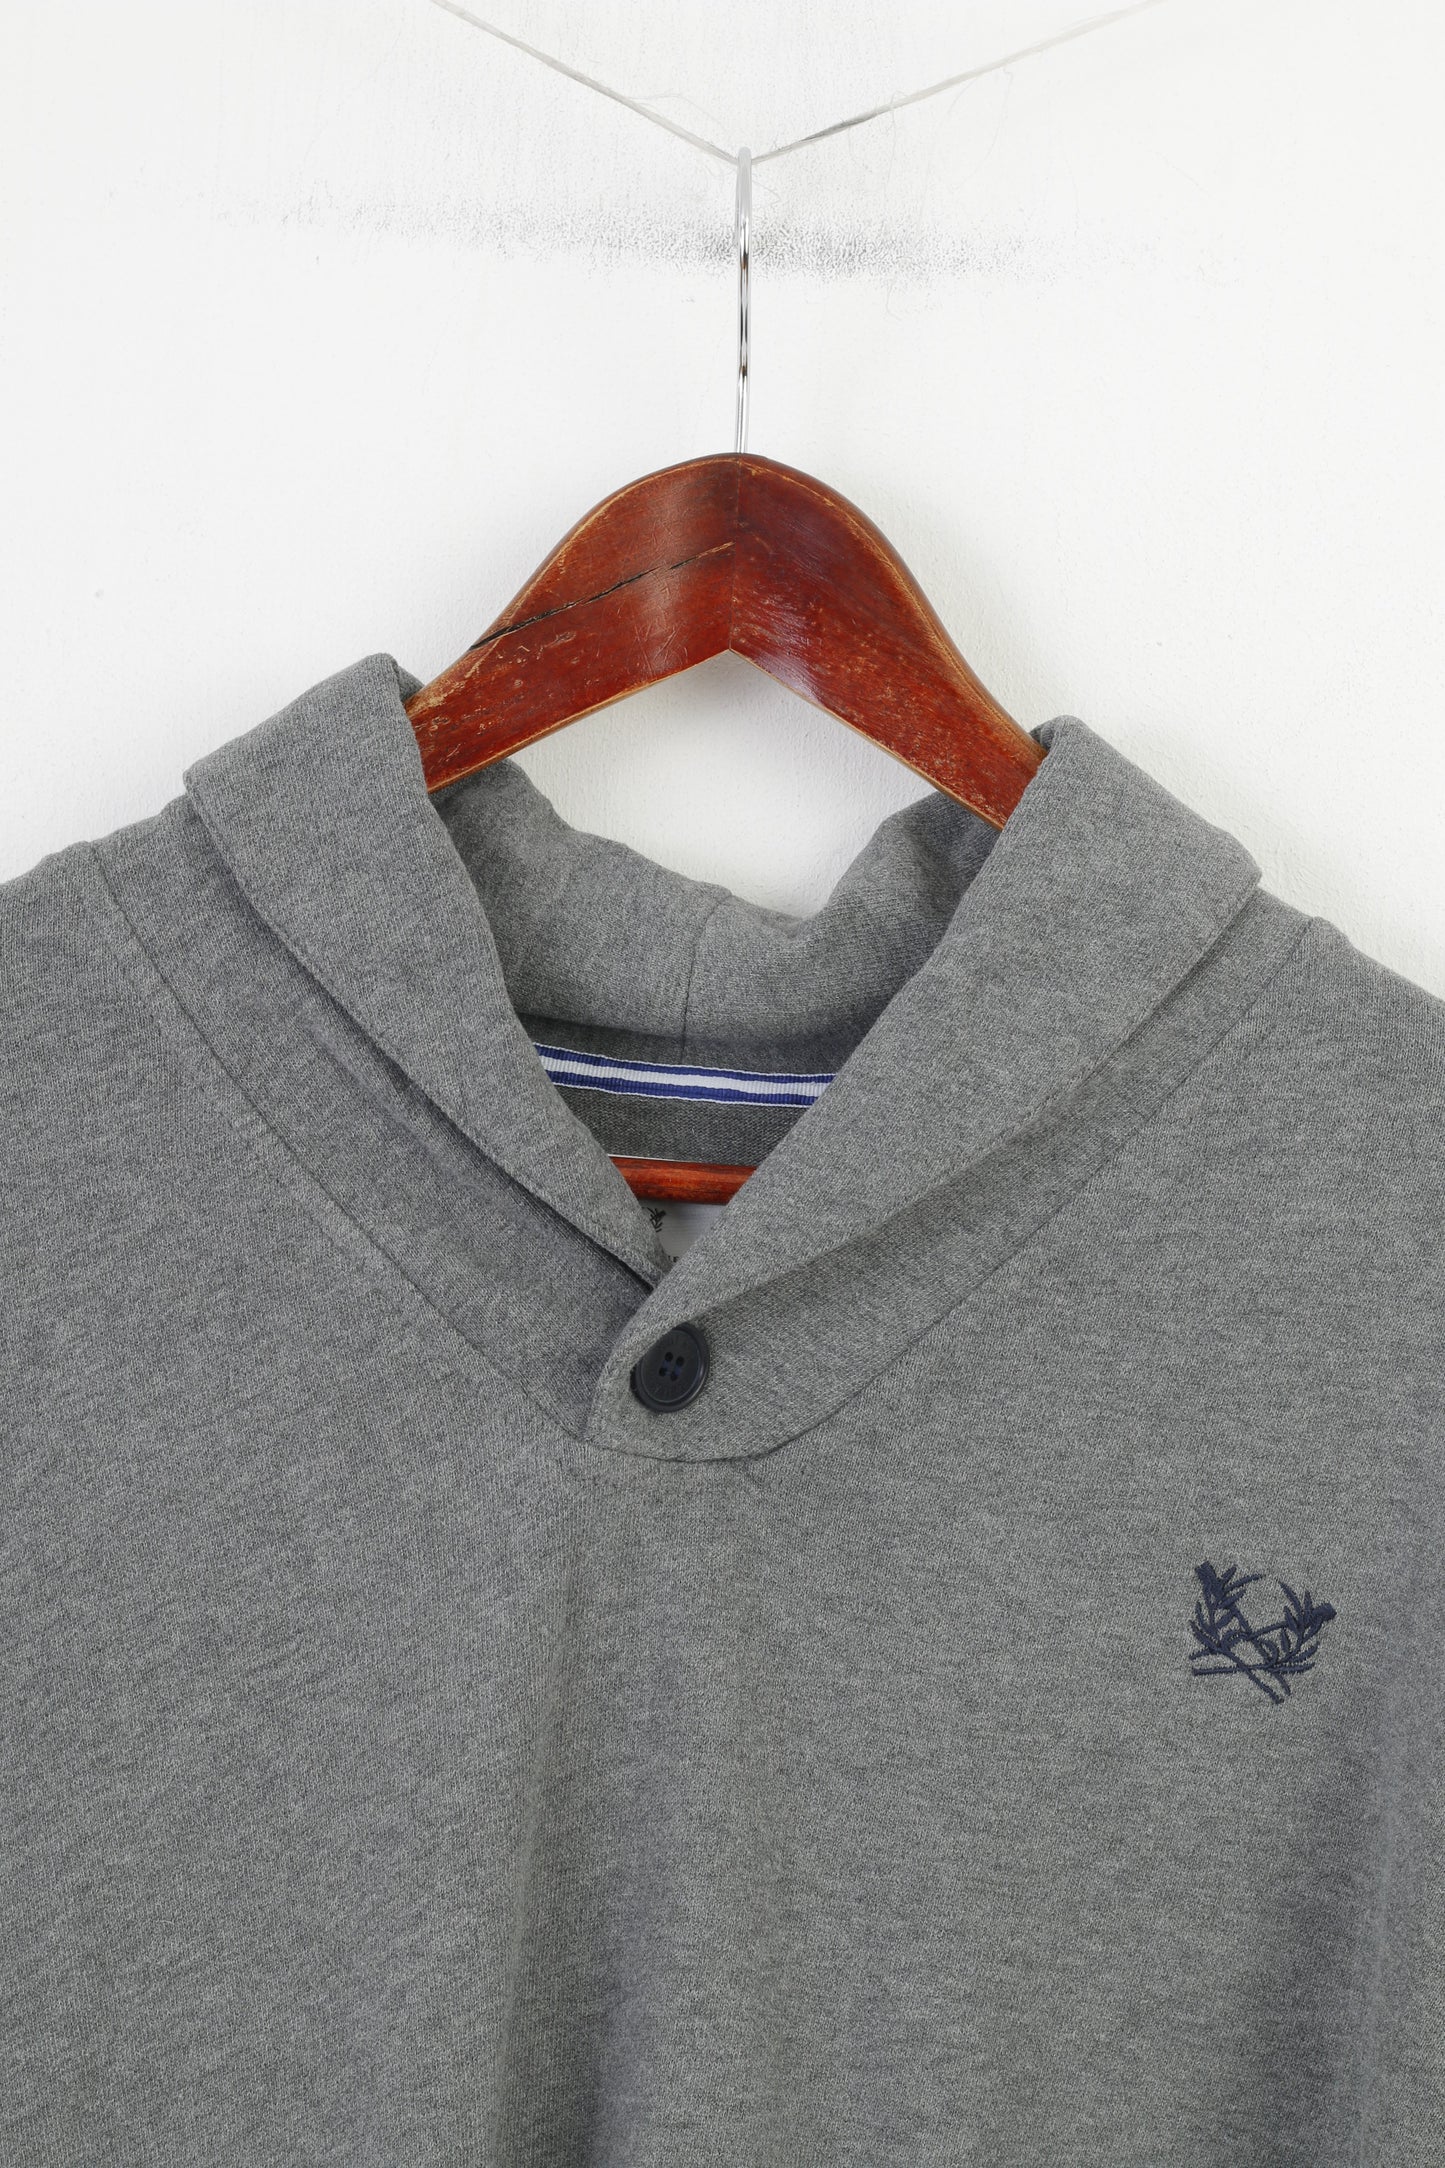 Paul Kehl Homme L Sweatshirt Gris Coton Col Sport &amp; Style Vintage Blouse Top